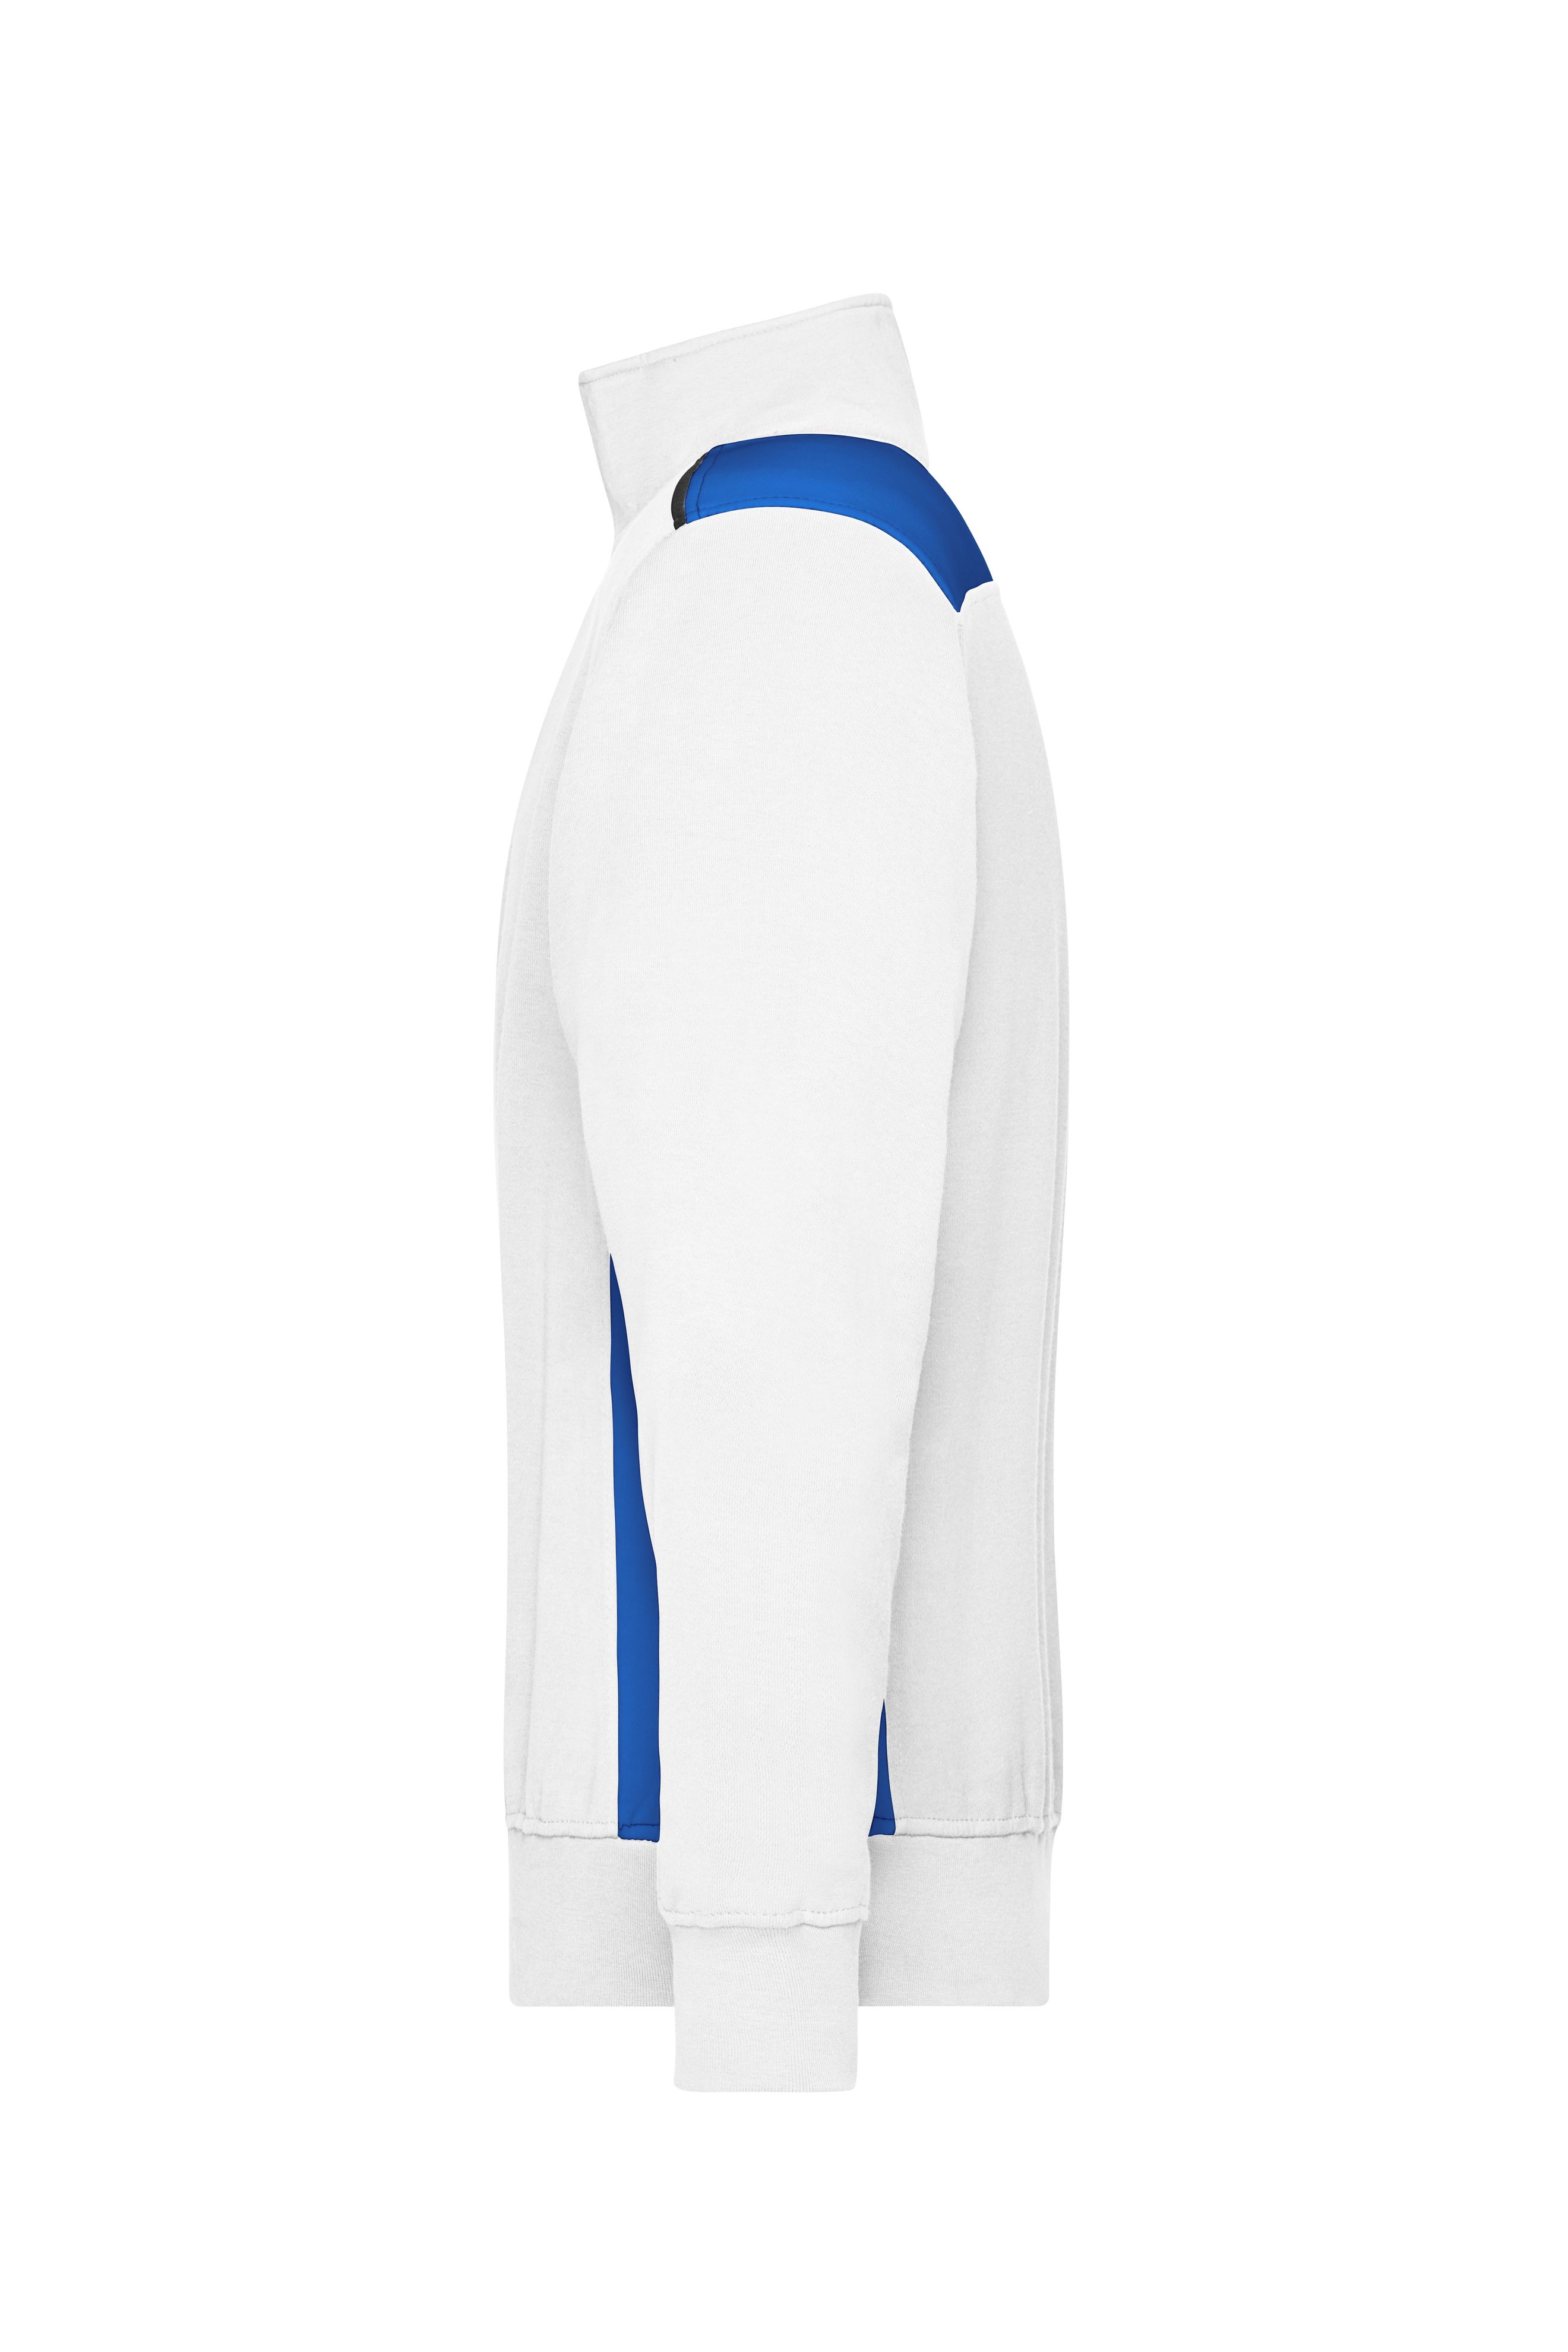 Workwear Half-Zip Sweat - COLOR - JN868 Sweatshirt mit Stehkragen, Reißverschluss und Kontrasteinsätzen